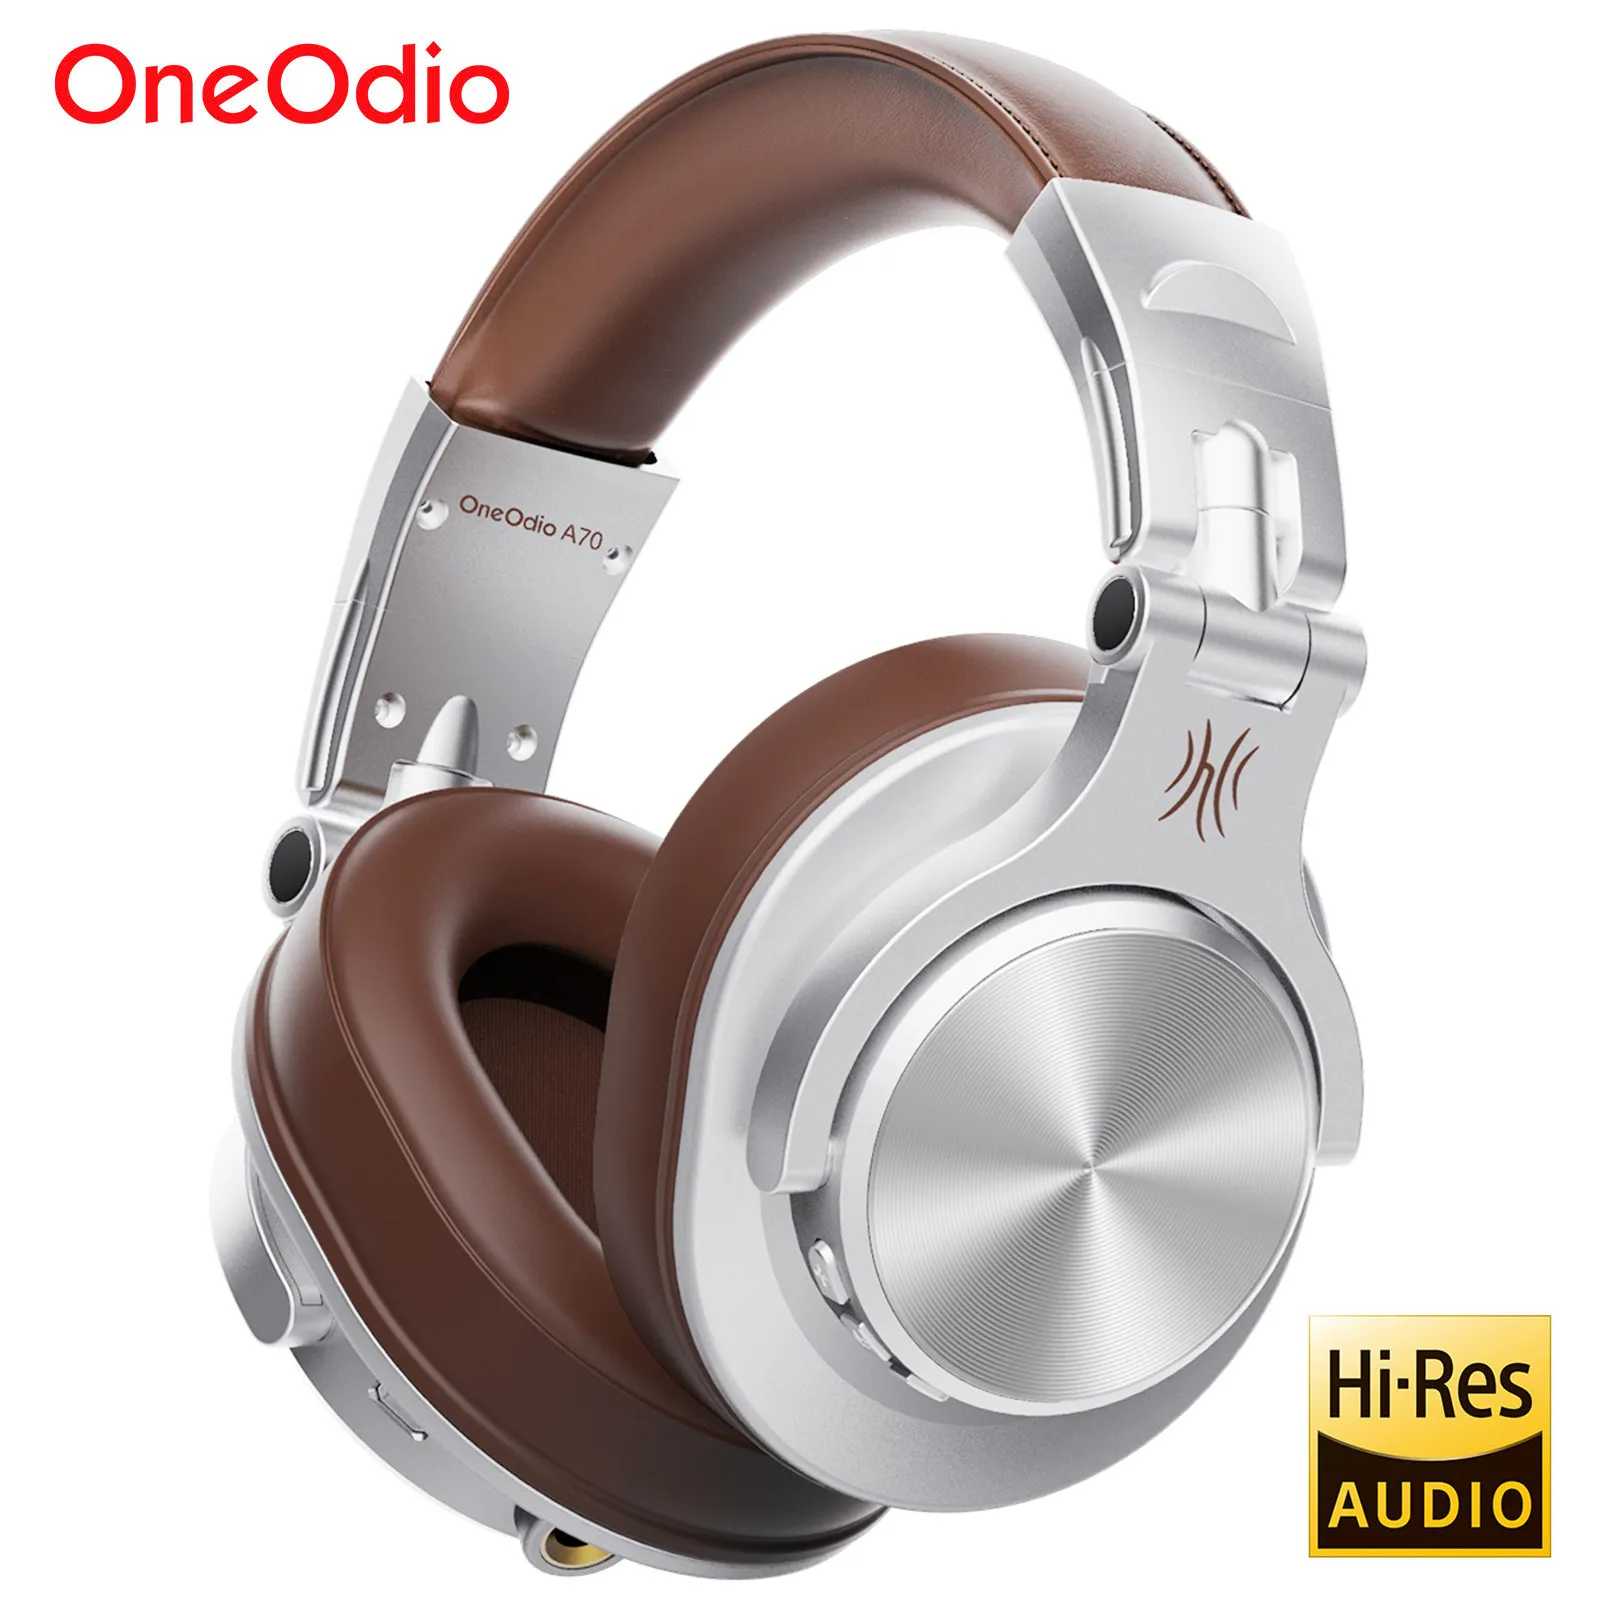 Headset oneodio A70 fusion trådbunden trådlös Bluetooth 5 2 hörlurar för telefon med mic över öronstudio DJ hörlurar inspelning headset 230927